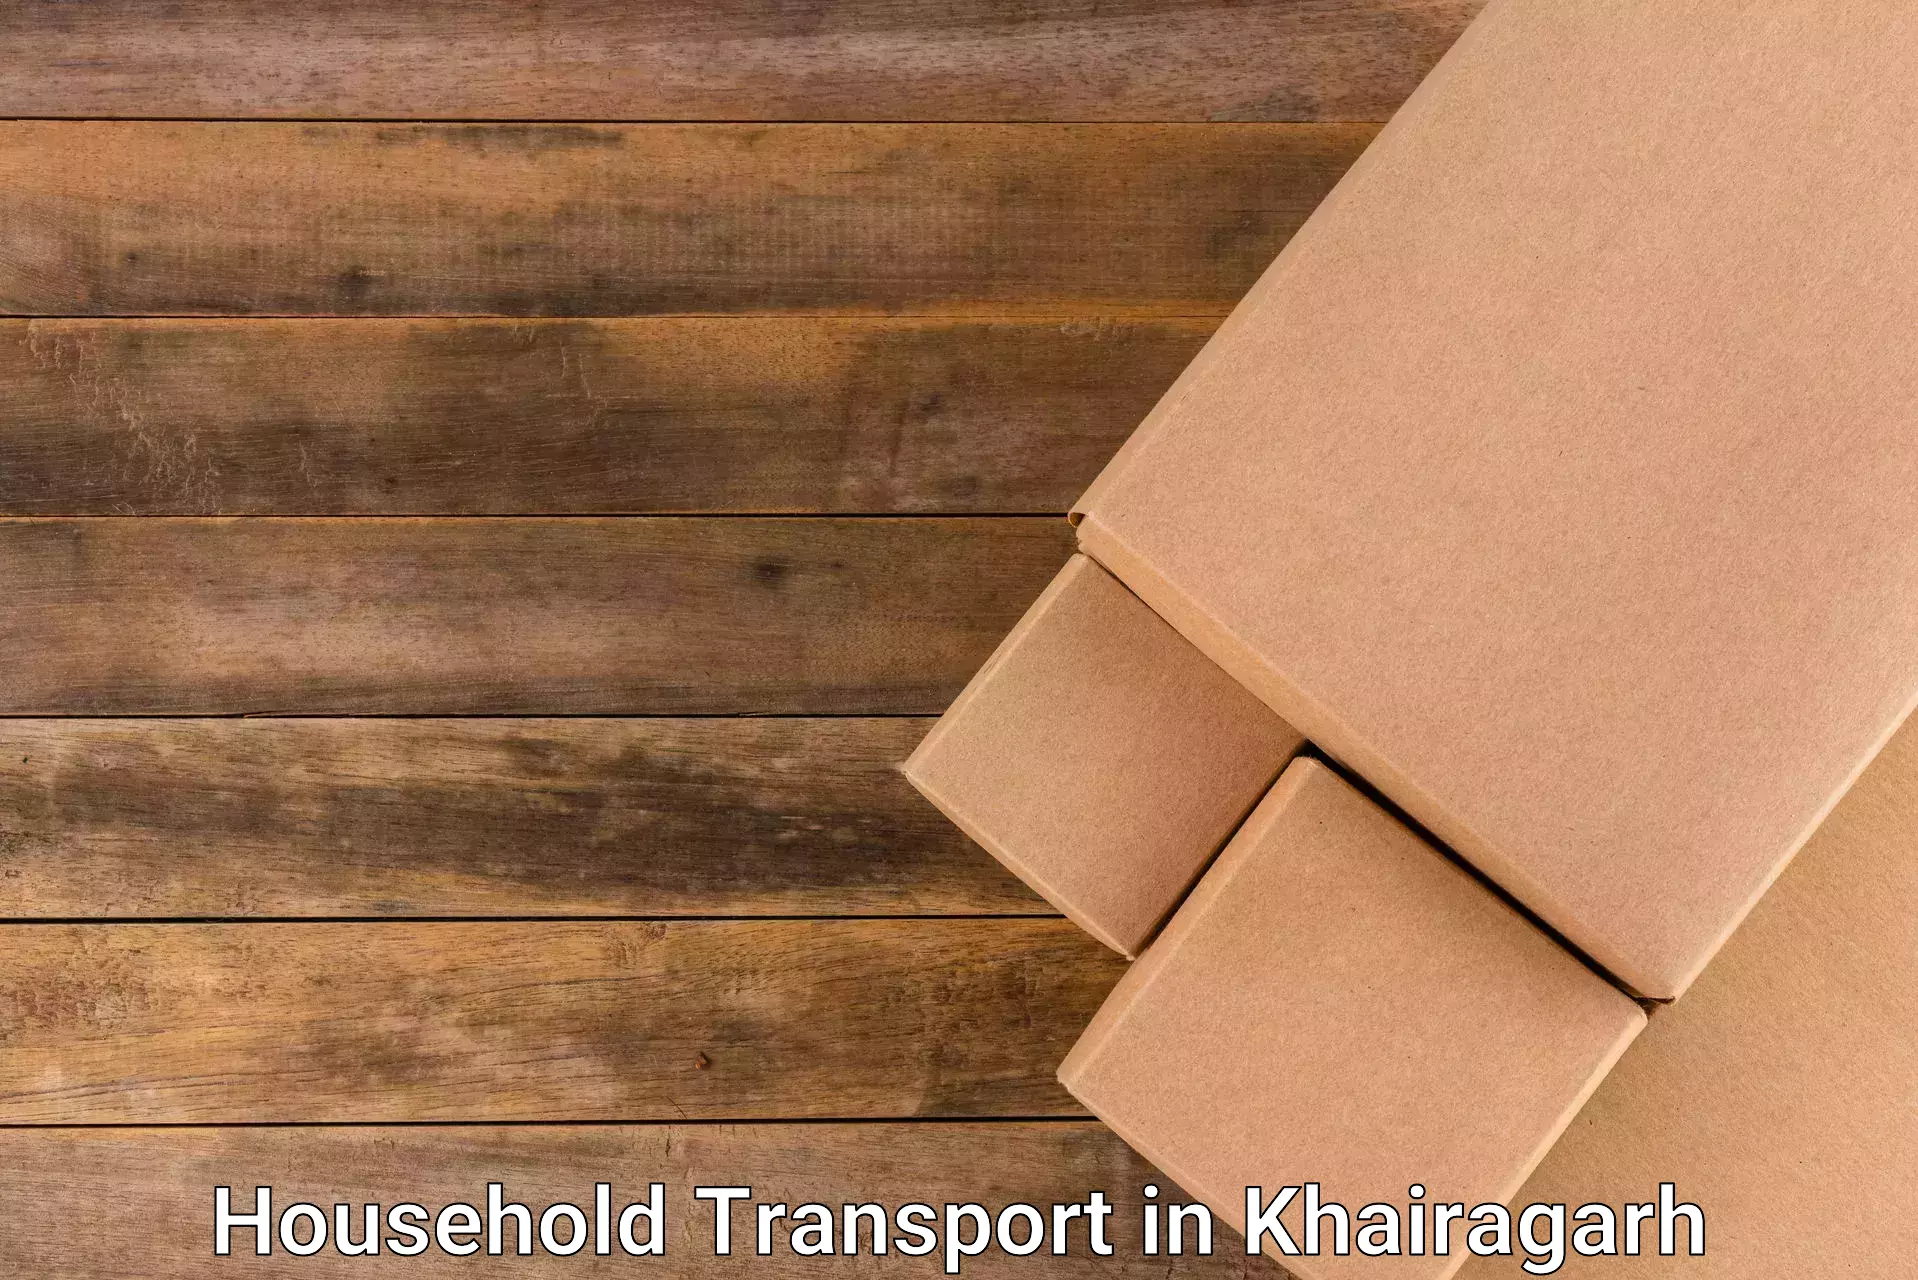 Household goods transport in Khairagarh